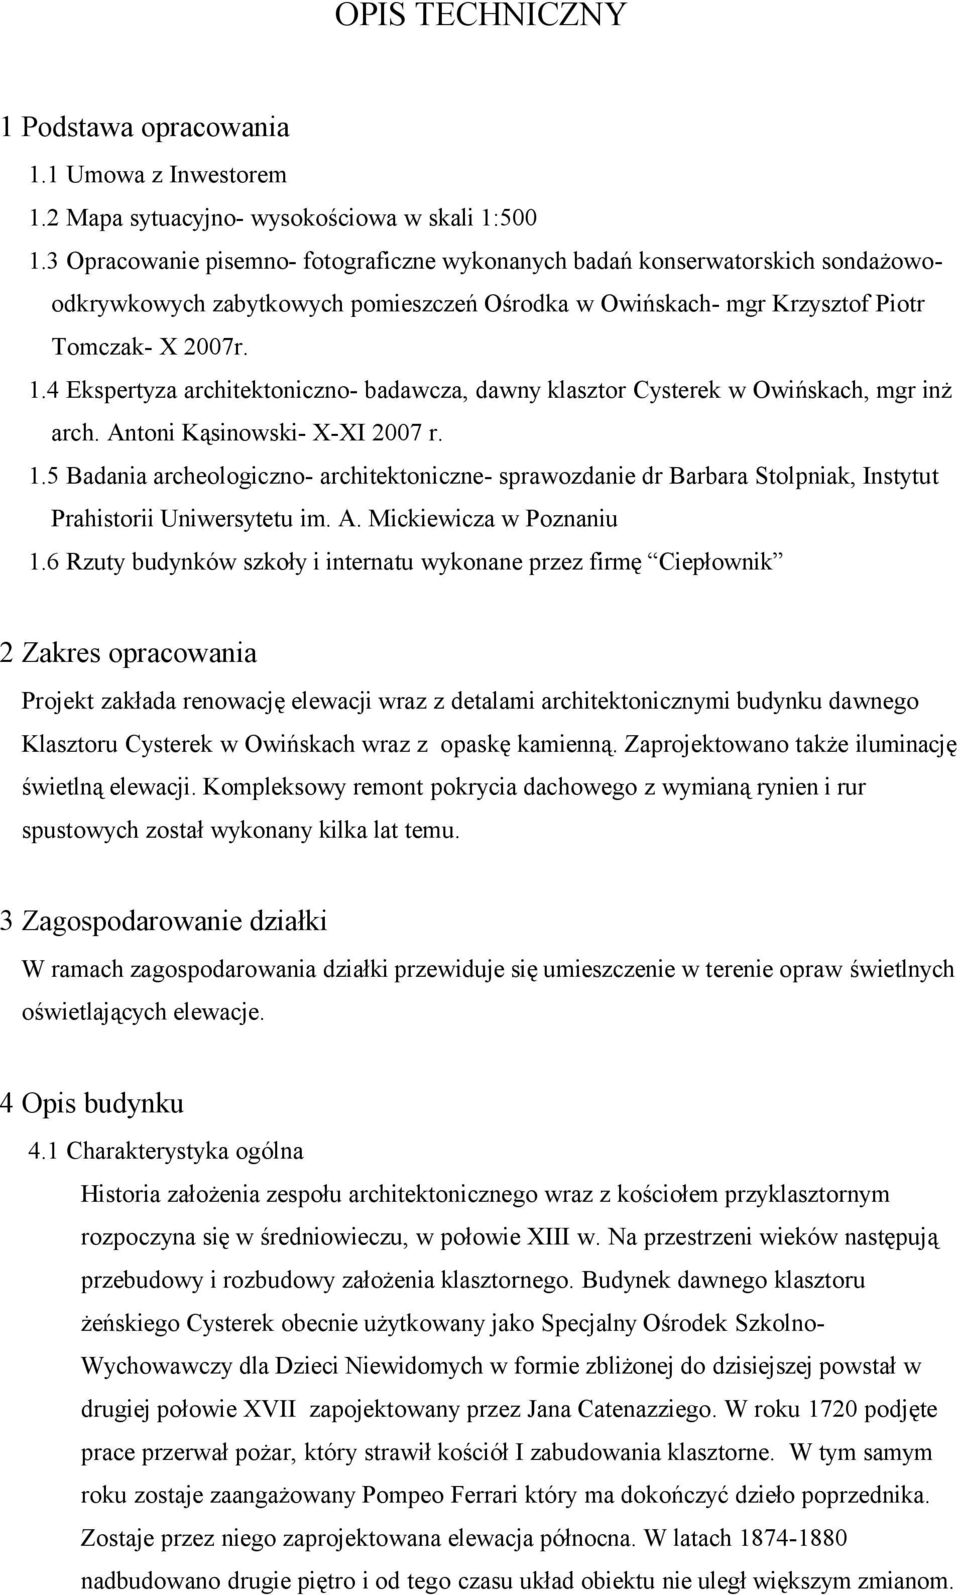 4 Ekspertyza architektoniczno- badawcza, dawny klasztor Cysterek w Owińskach, mgr inż arch. Antoni Kąsinowski- X-XI 2007 r. 1.